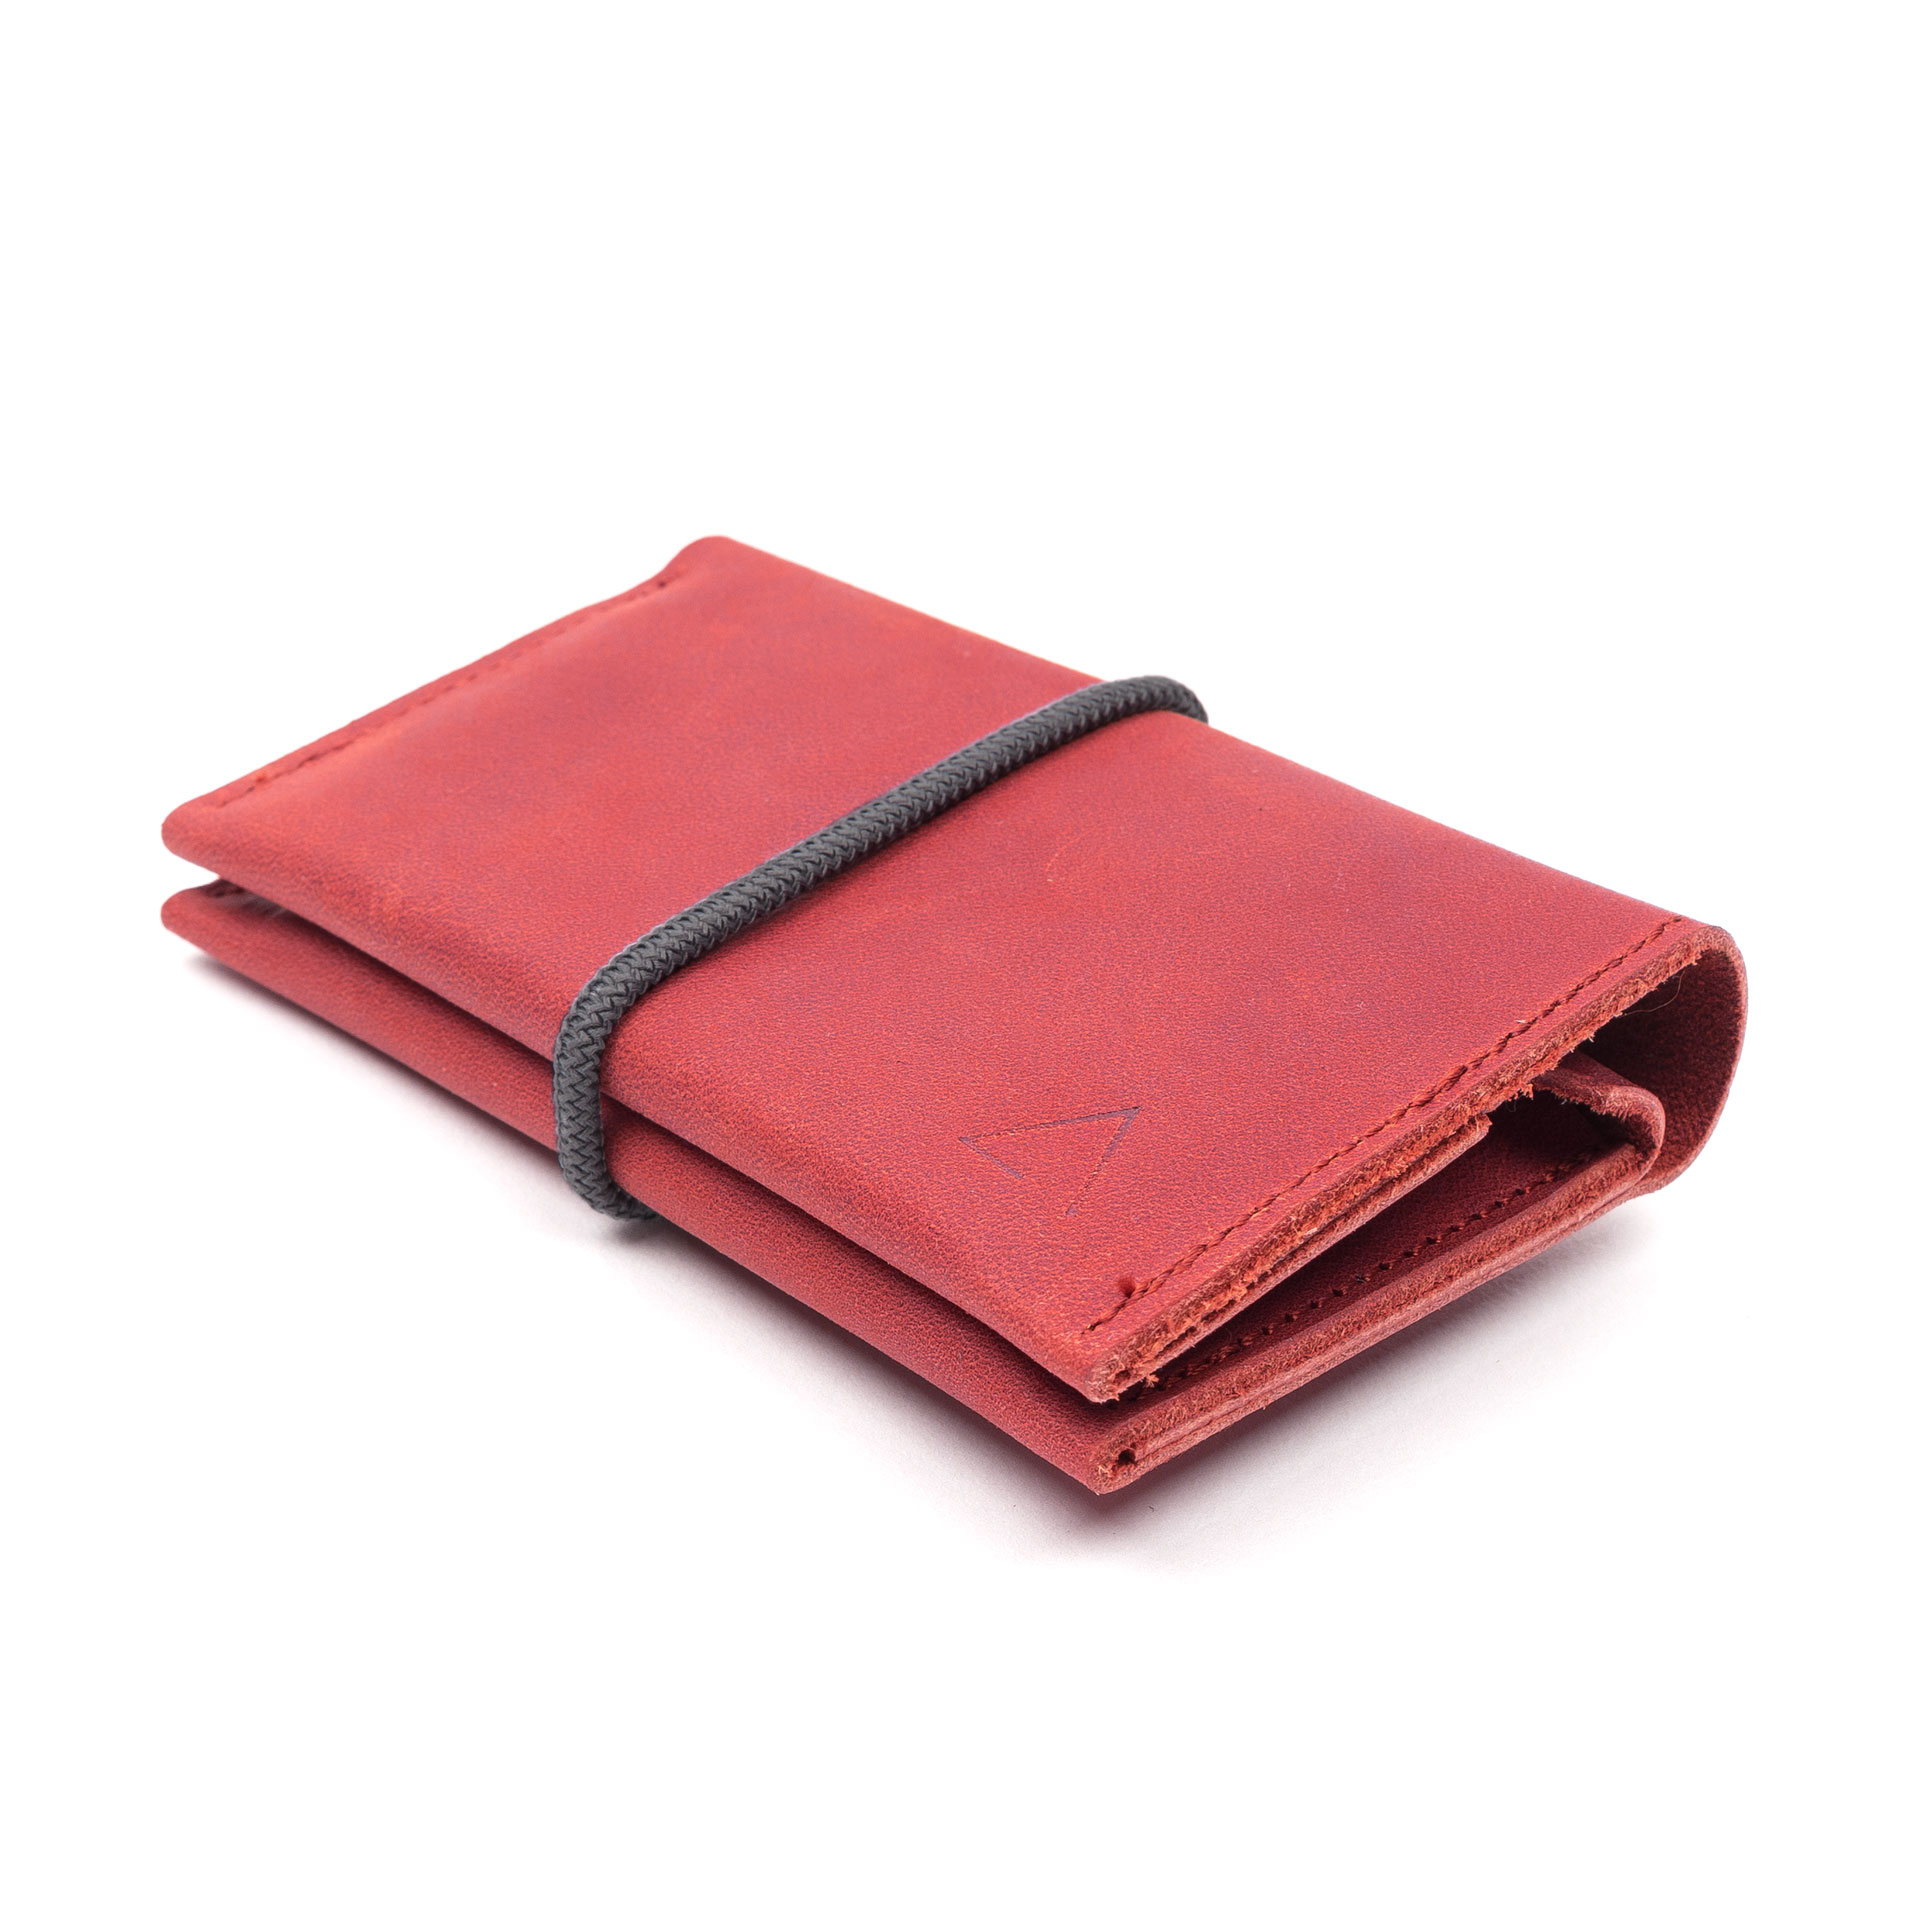 Portemonnaie OLI MIDI aus nachhaltigem Naturleder in Rot mit grauem Verschlussband